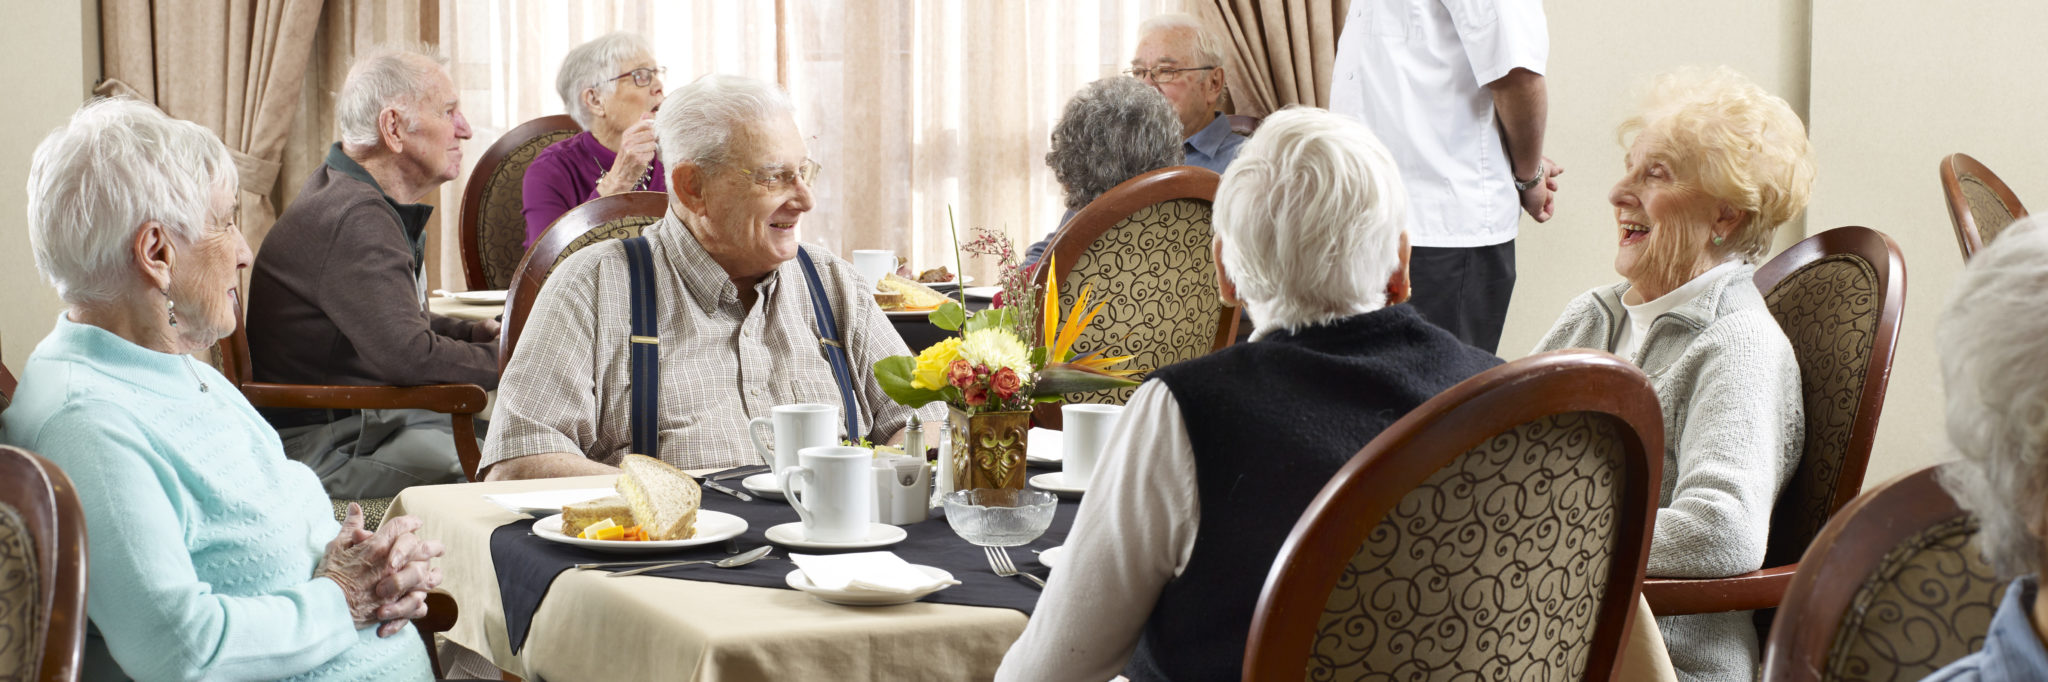 retirement residence, group of seniors eating dinner